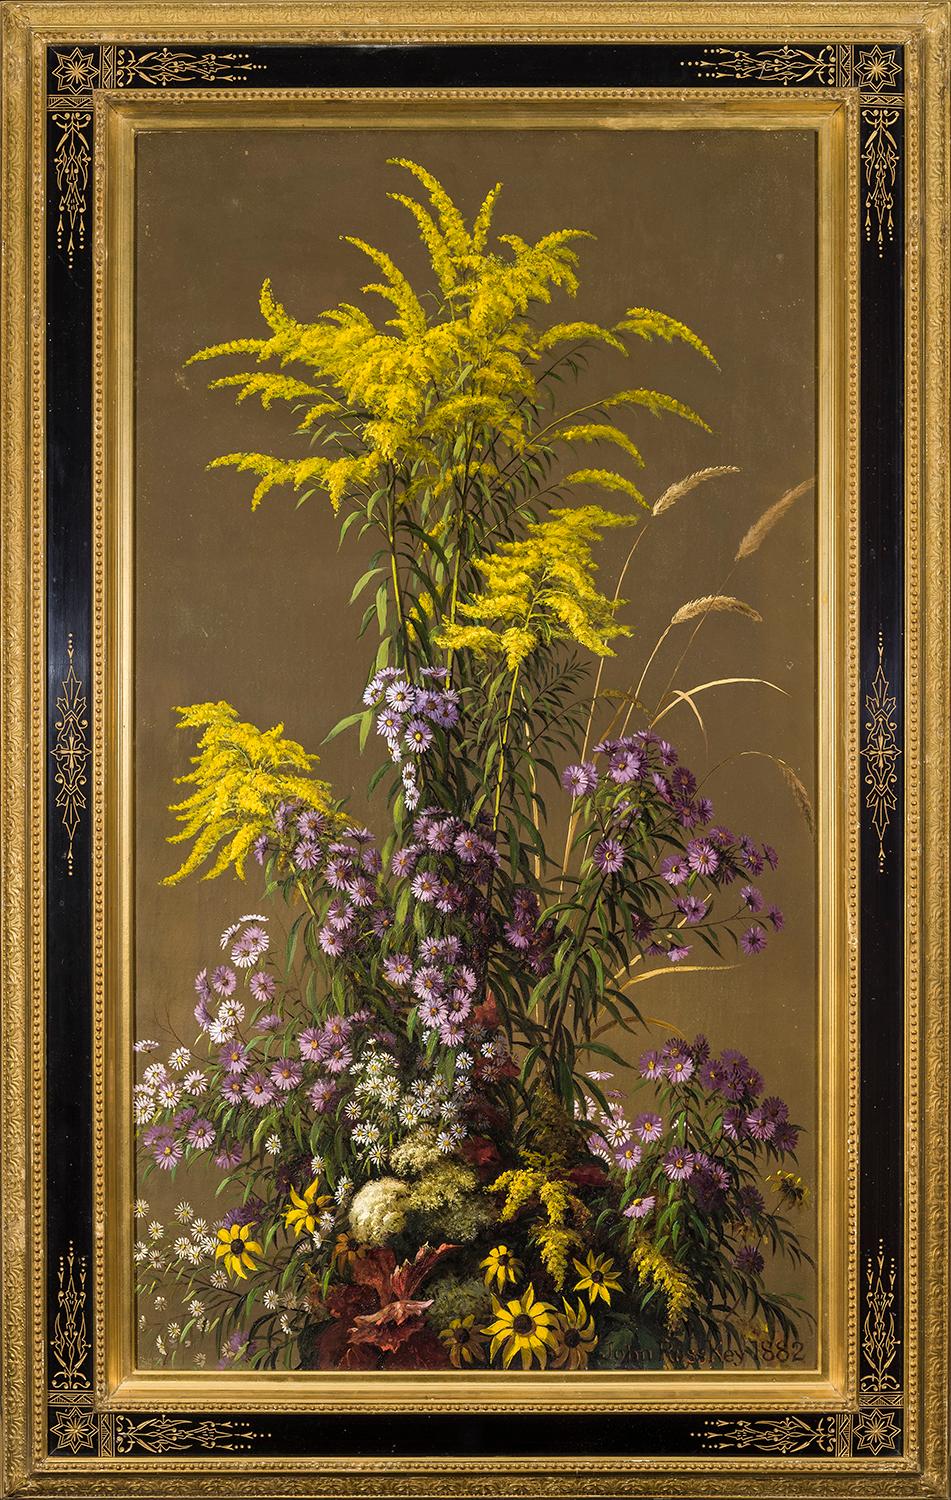 Épingle dorée et autres fleurs sauvages - Jaune Still-Life Painting par John Ross Key